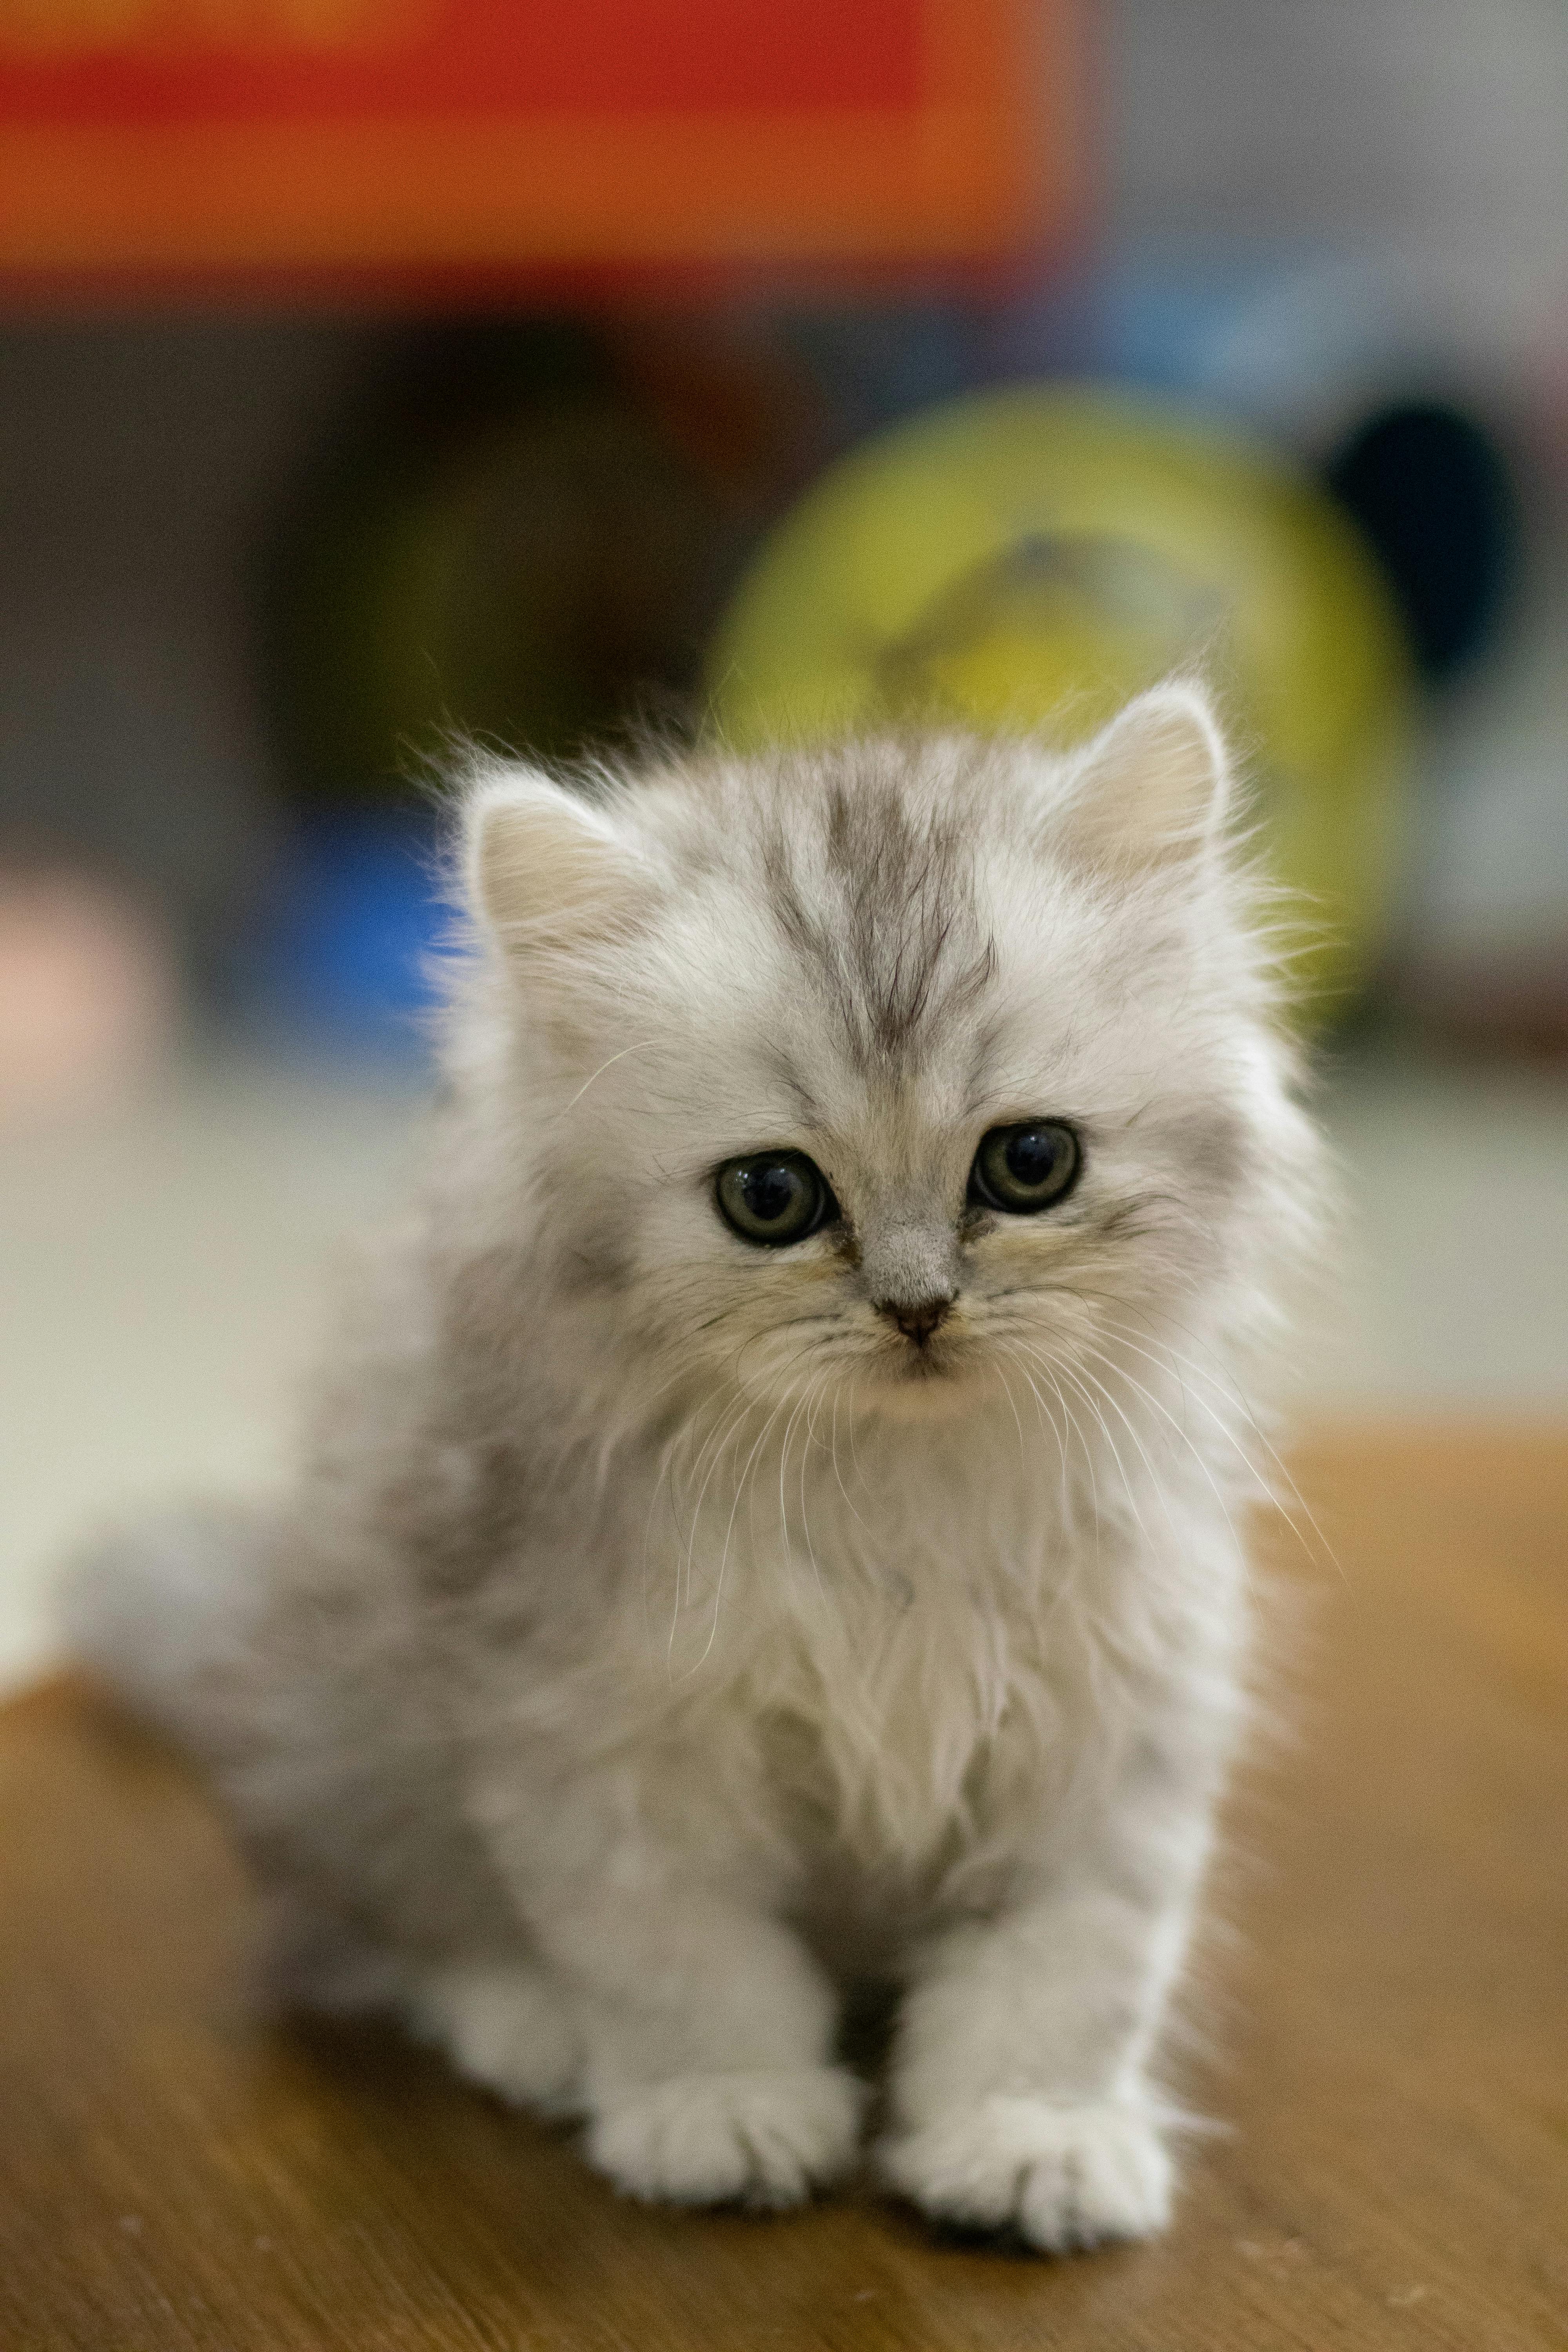 White Fluffy Kittens For Free / Home Kitten Korner Rescue Inc Owner